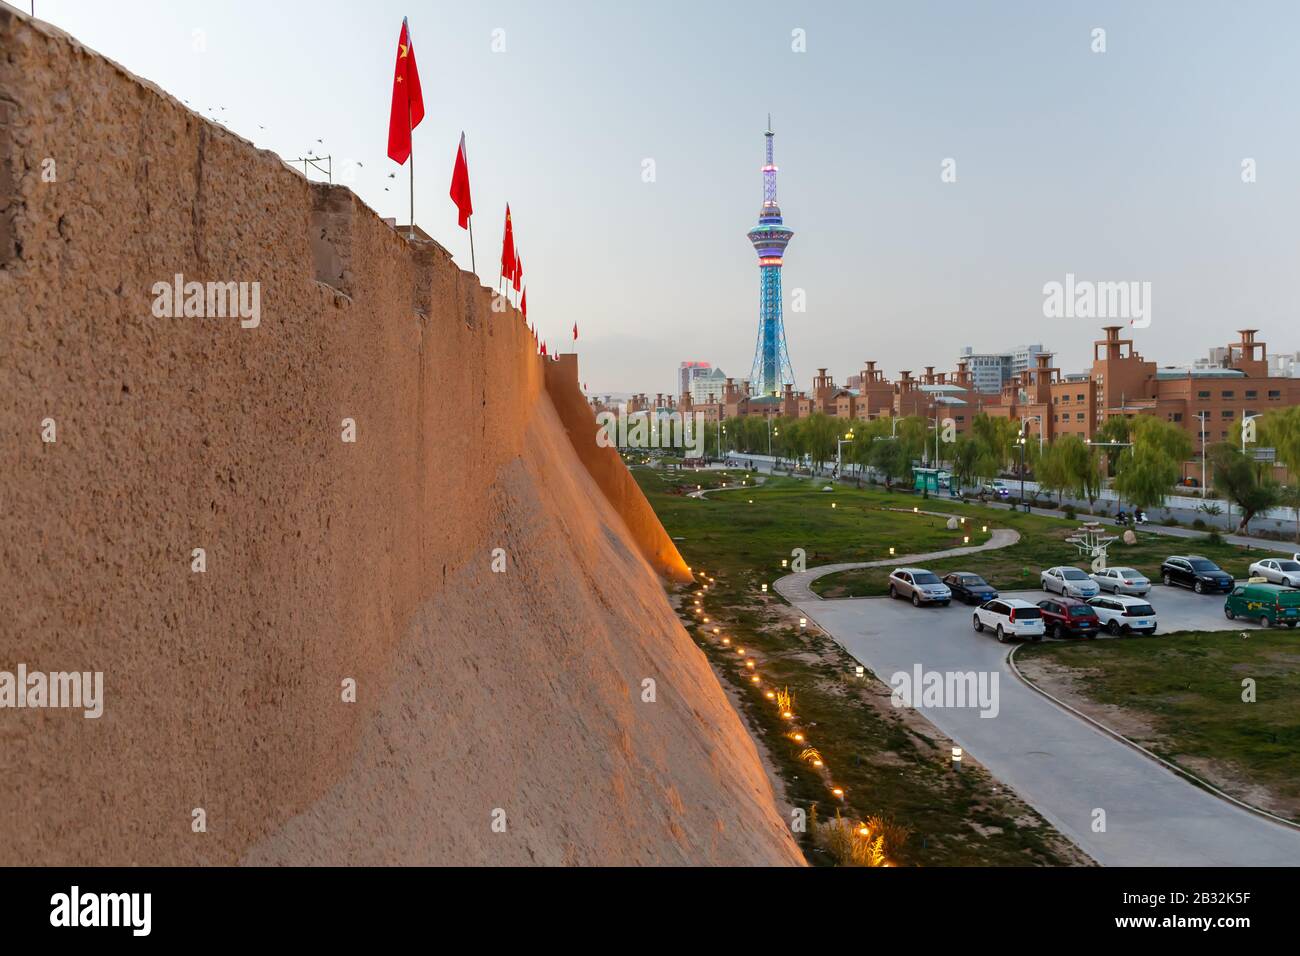 Vista lungo le mura della città vecchia di Kashgar verso la torre della televisione. A causa della festa nazionale le bandiere cinesi sono montate sulla parte superiore del muro. Foto Stock